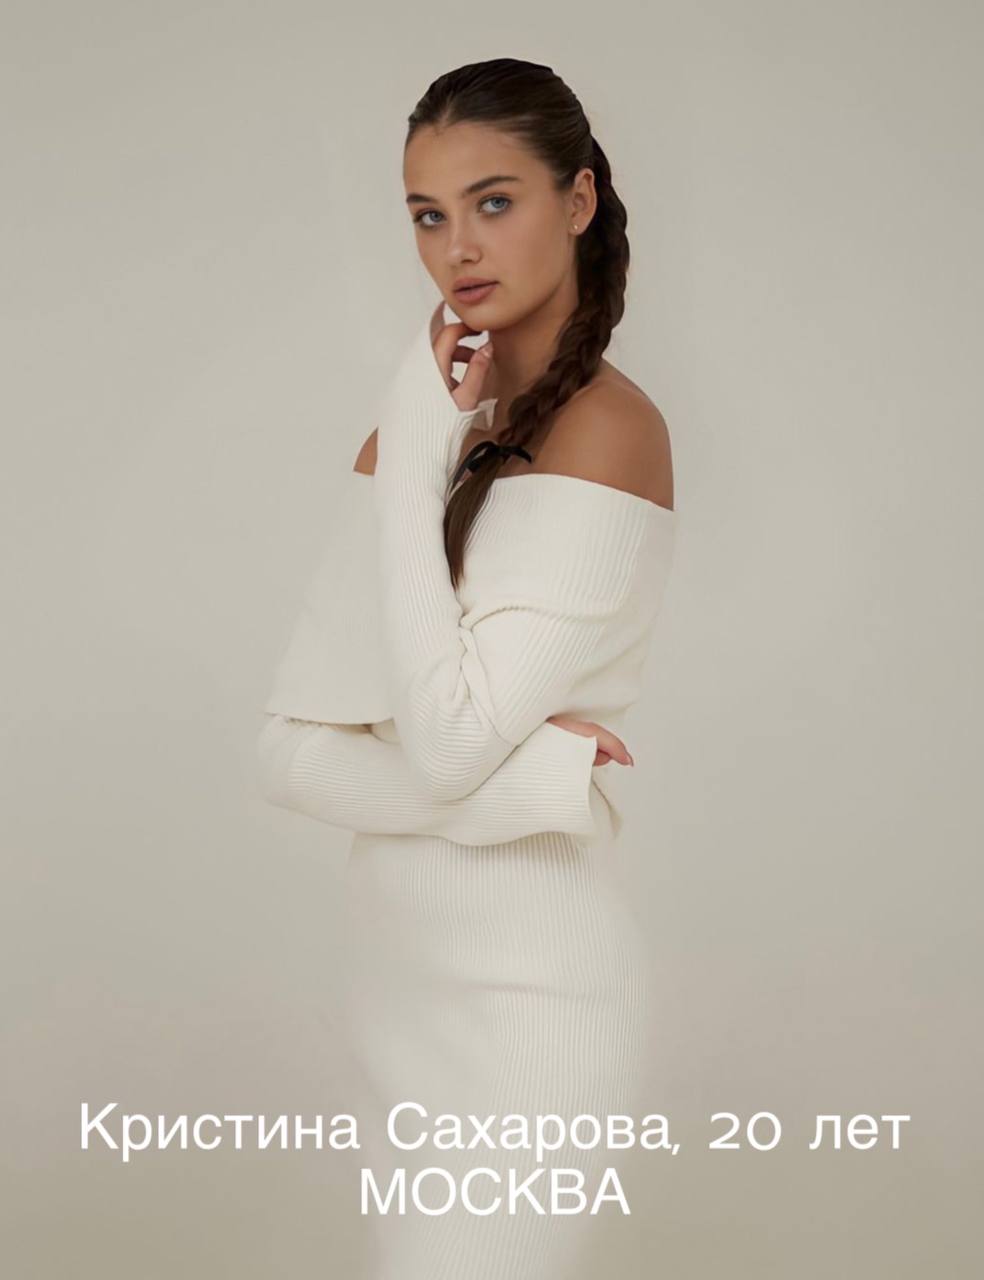 12 блондинок, 12 брюнеток и 1 рыжая: на «Мисс Россия» выберут самую  красивую девушку страны | WOMAN